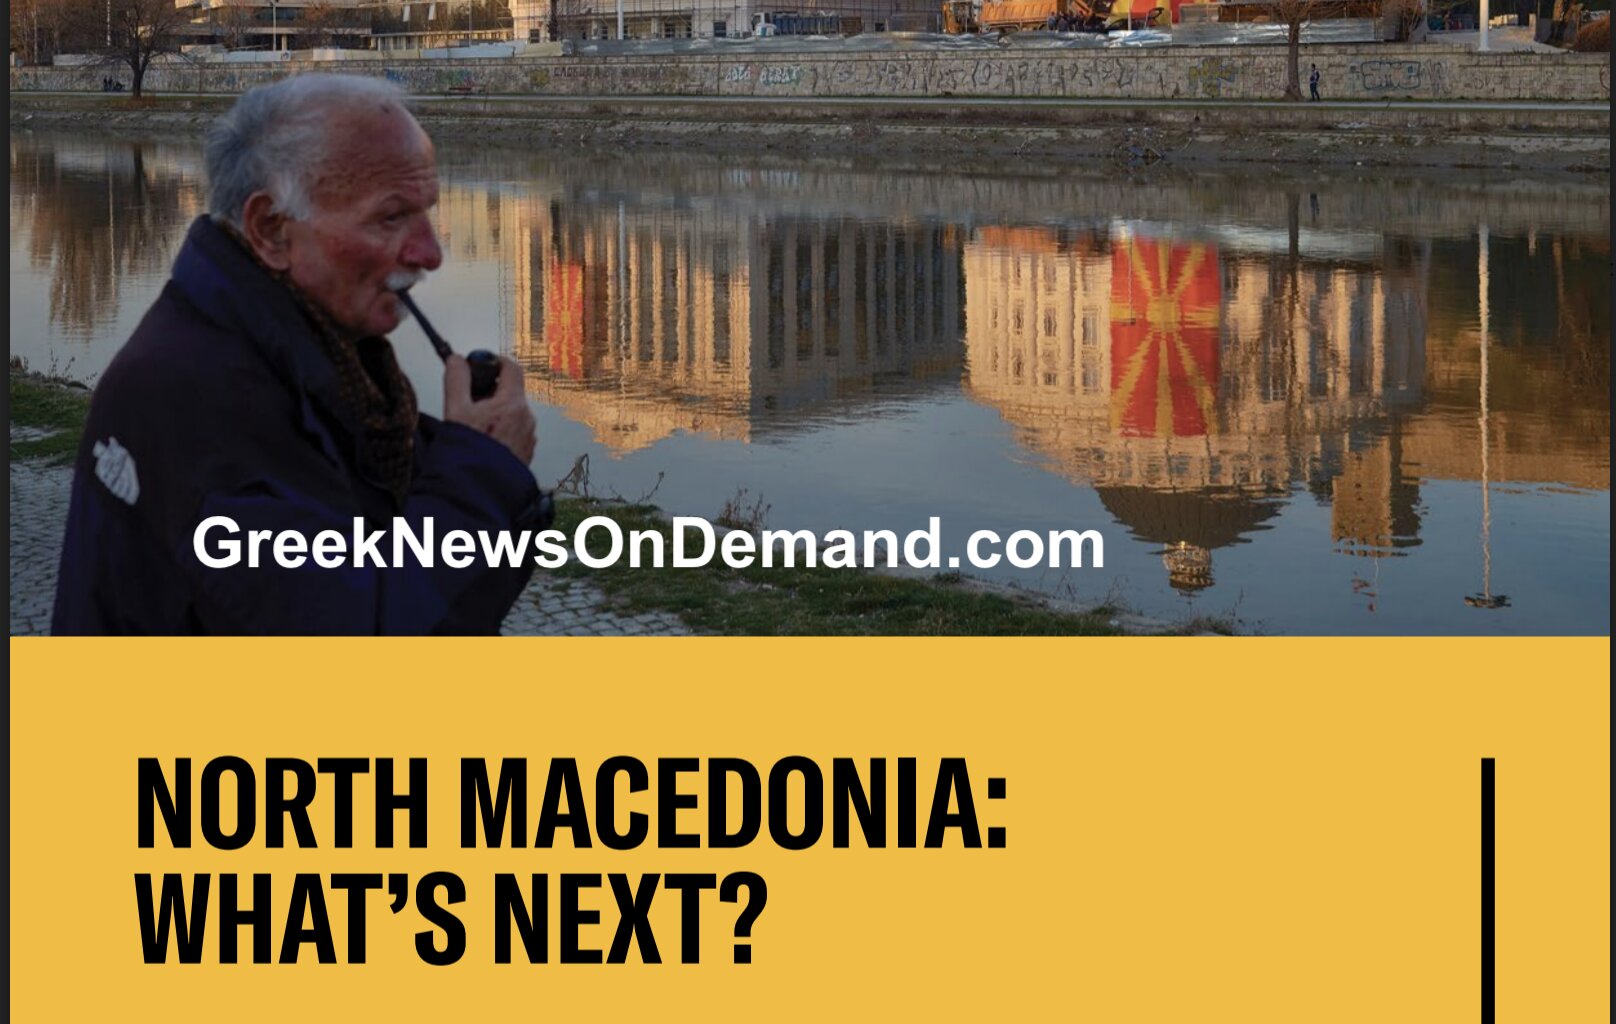 Η Ανοικτή Κοινωνία του Τζόρτζ Σόρος: Η Βόρεια Μακεδονία: Ποιο είναι το επόμενο βήμα;